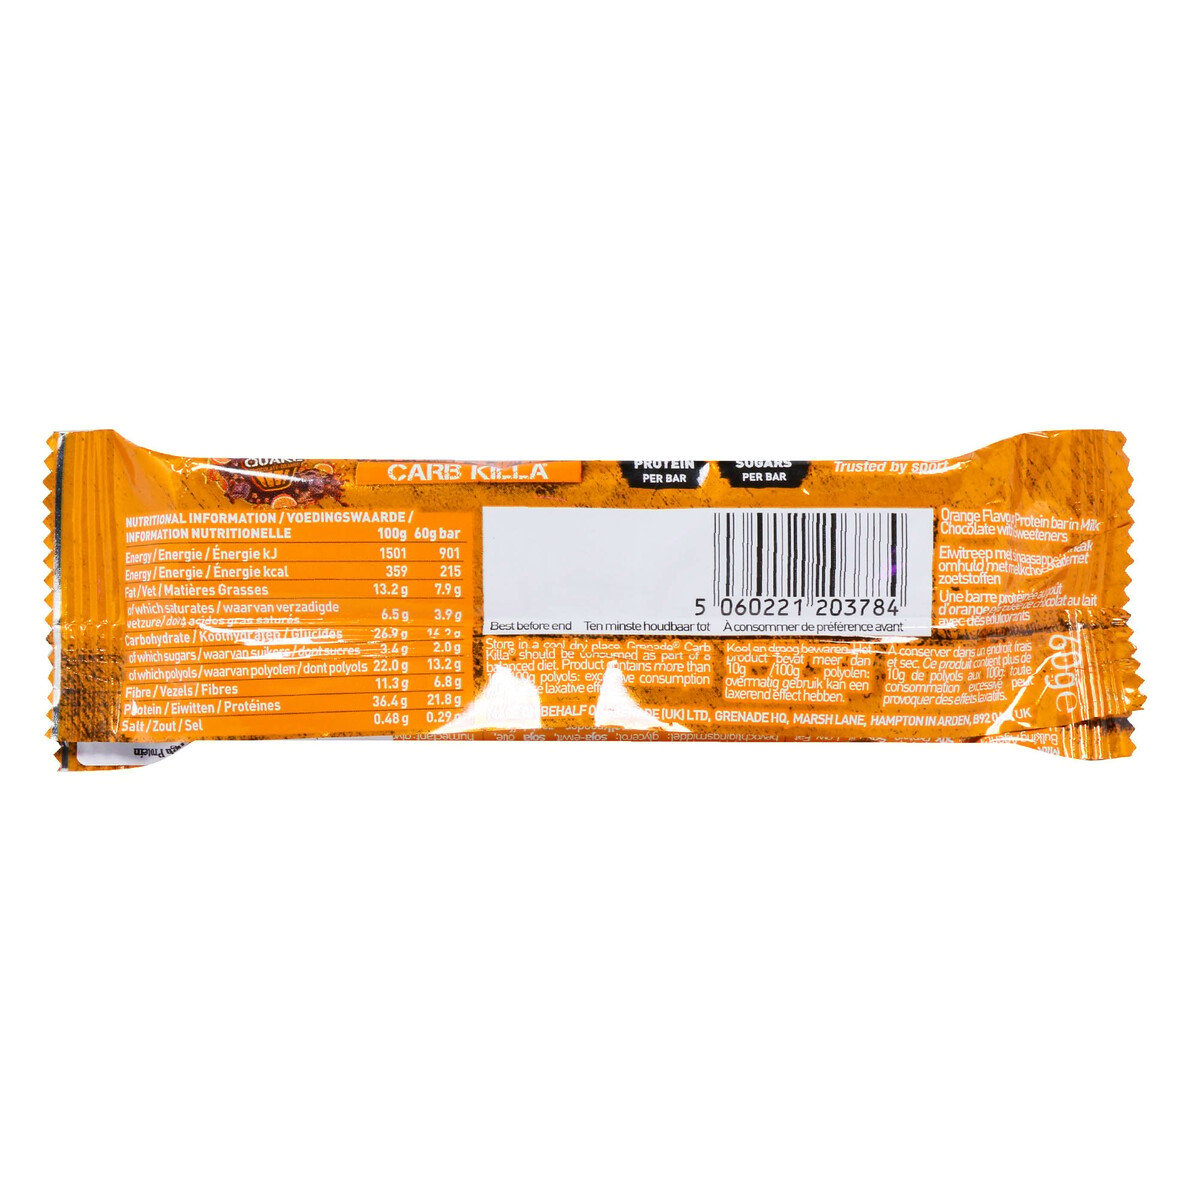 جرينيد كارب كيلا لوح بروتين بحشوة البرتقال مغطى بالشوكولاتة ٦٠ جم